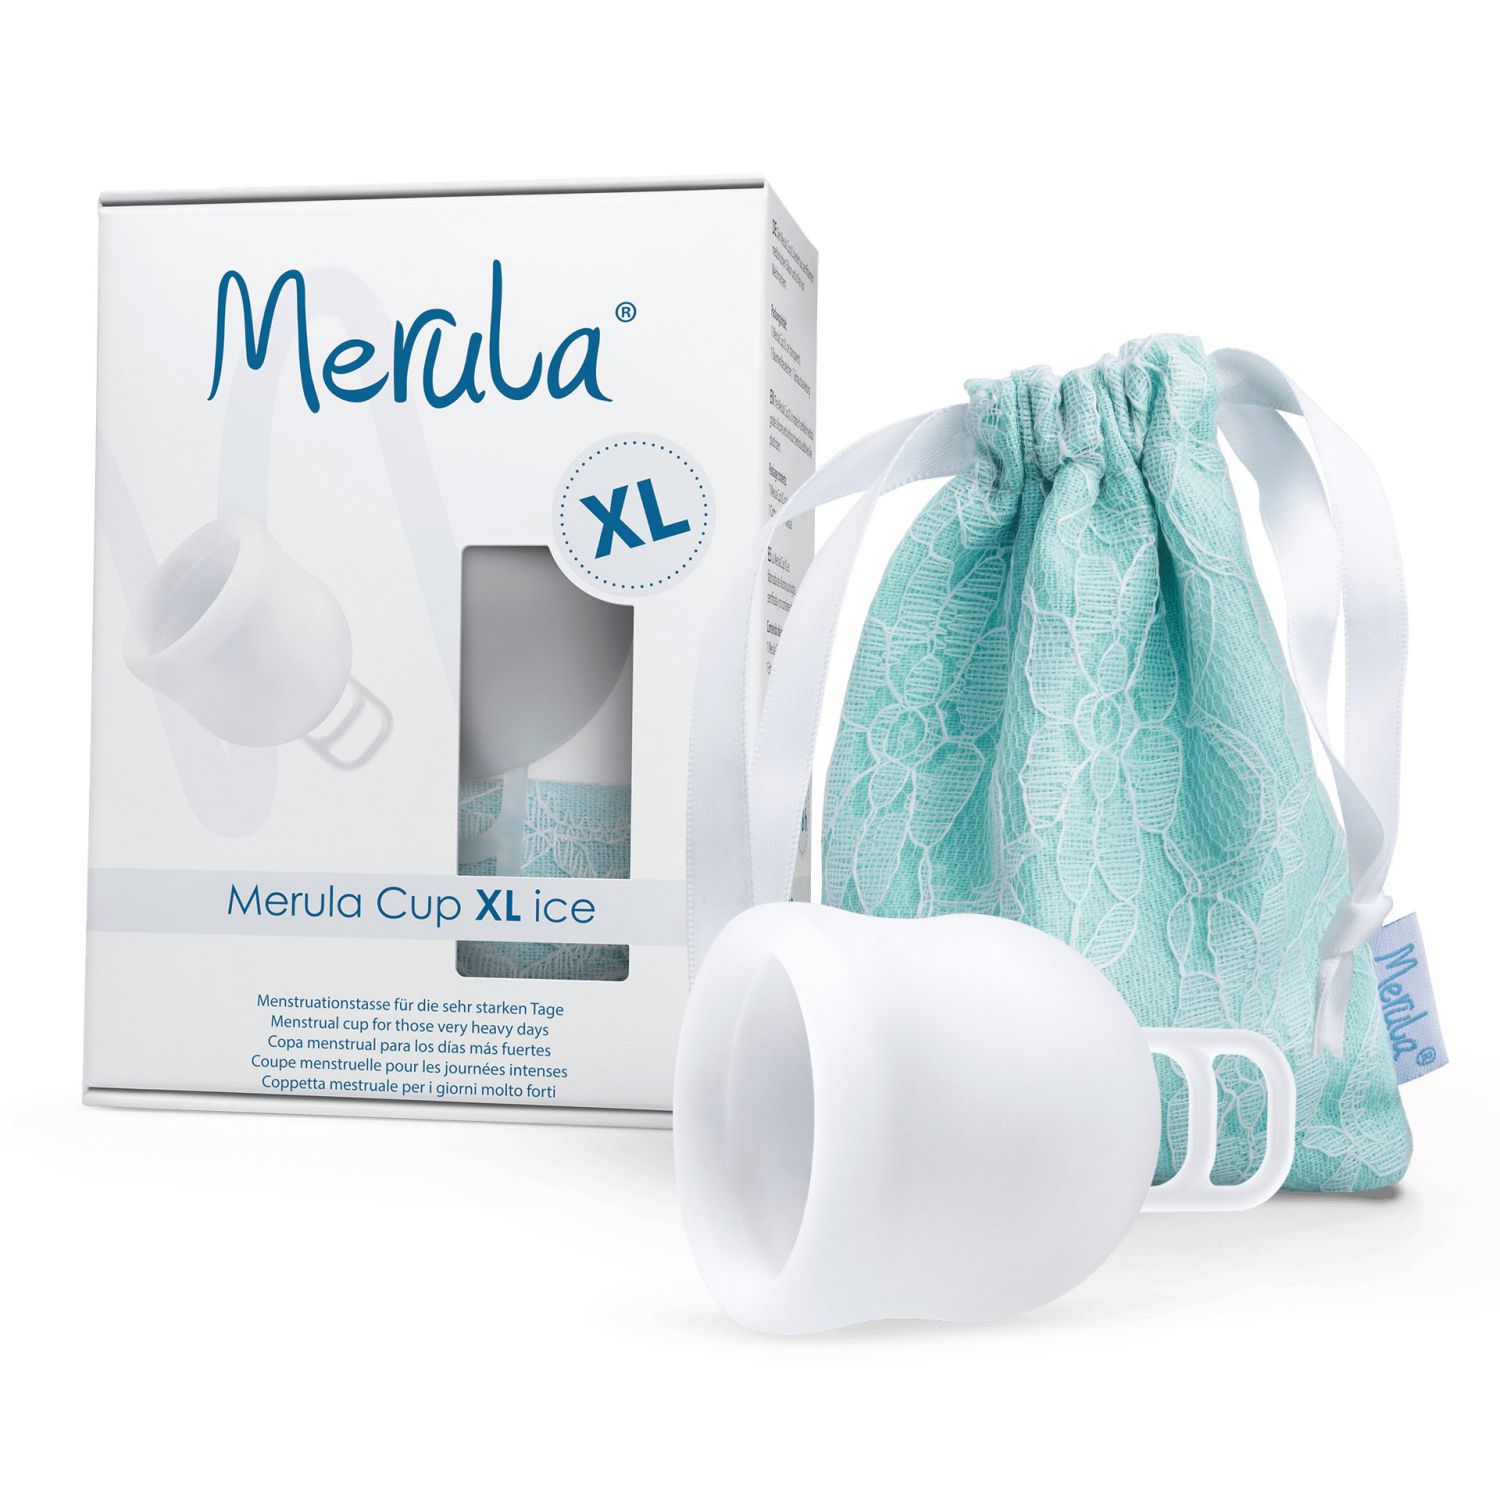 Merula Cup XL Menstrual Cup